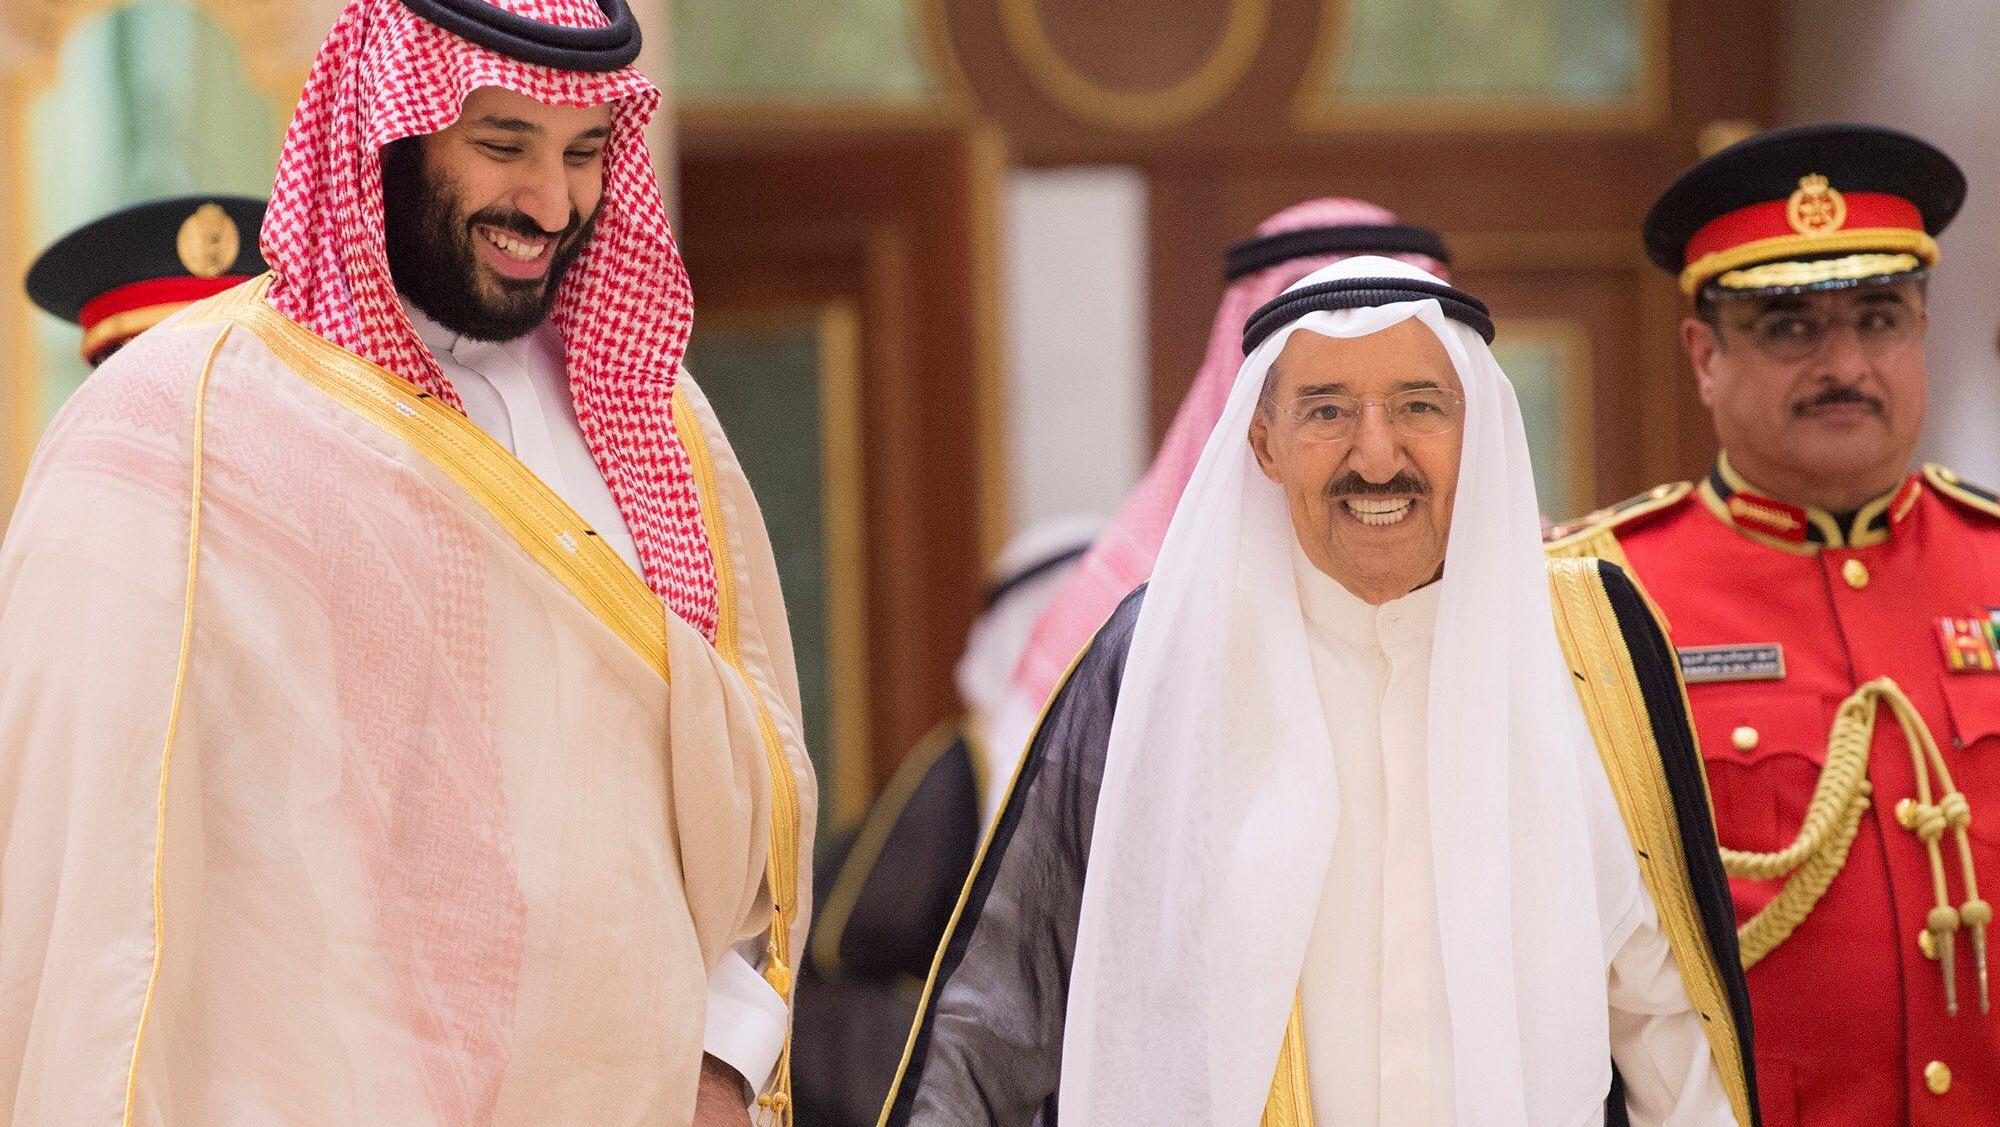 Los funcionarios de alto rango del reino saudita han negado estar involucrados en la desaparición del periodista Khashoggi.